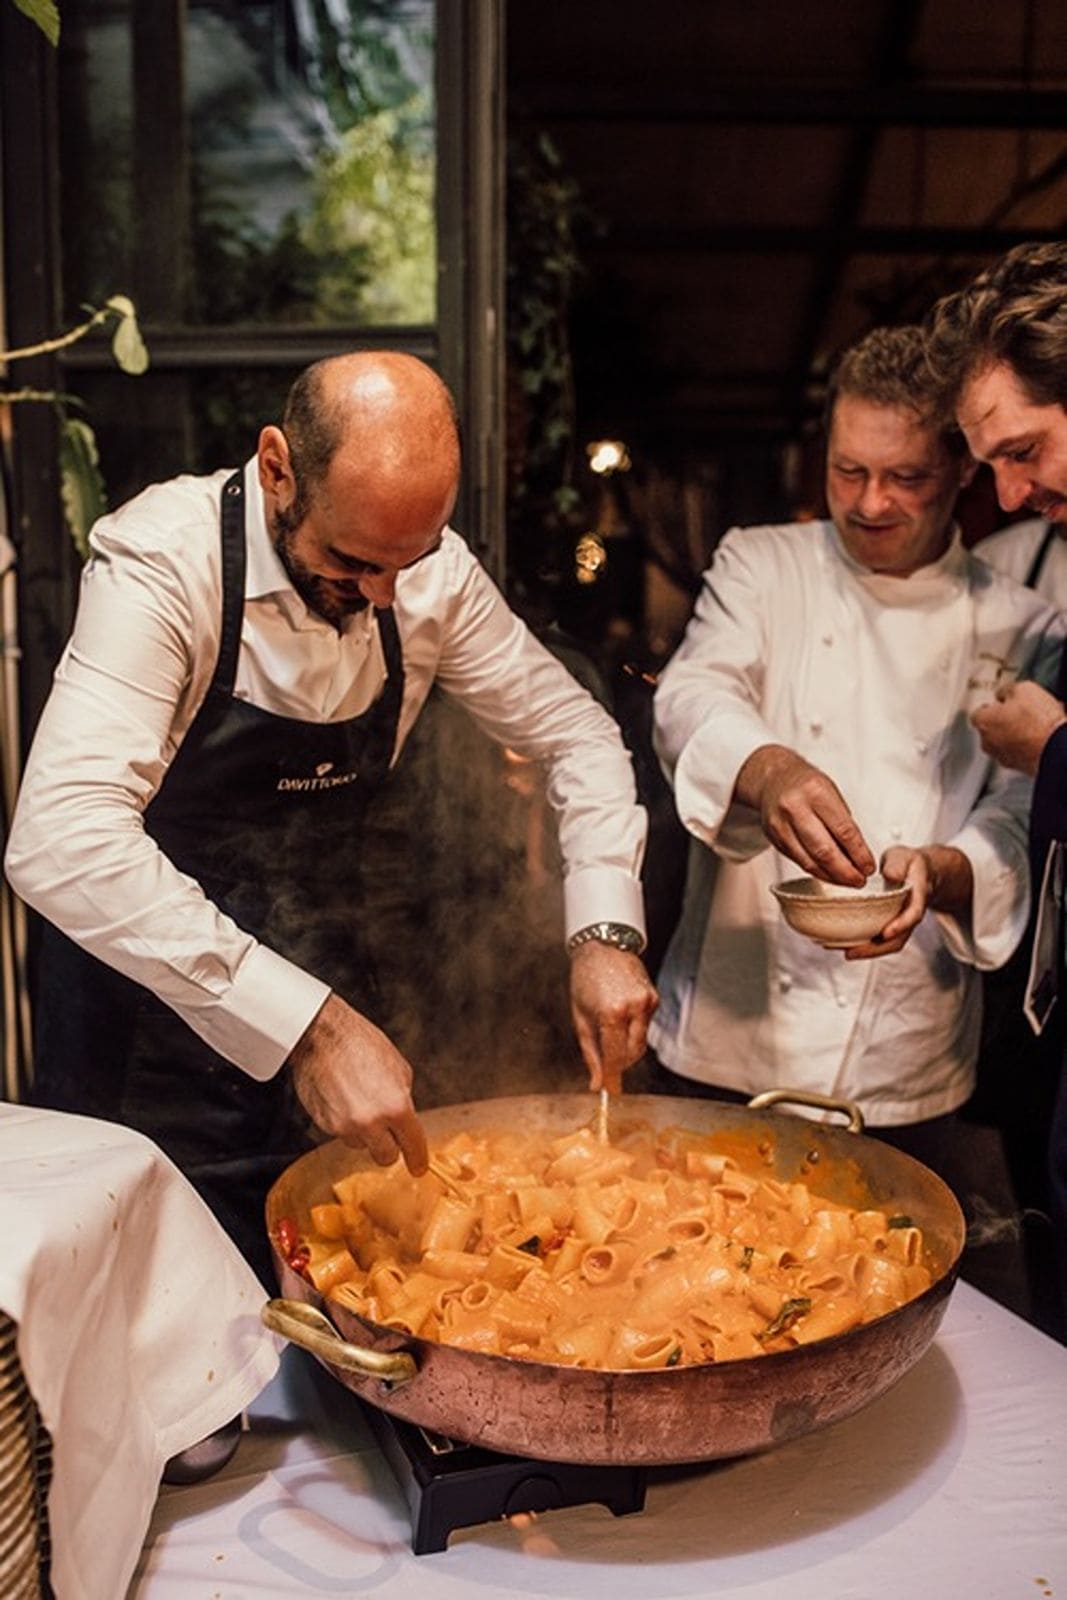 Chef prepares pasta at wedding reception